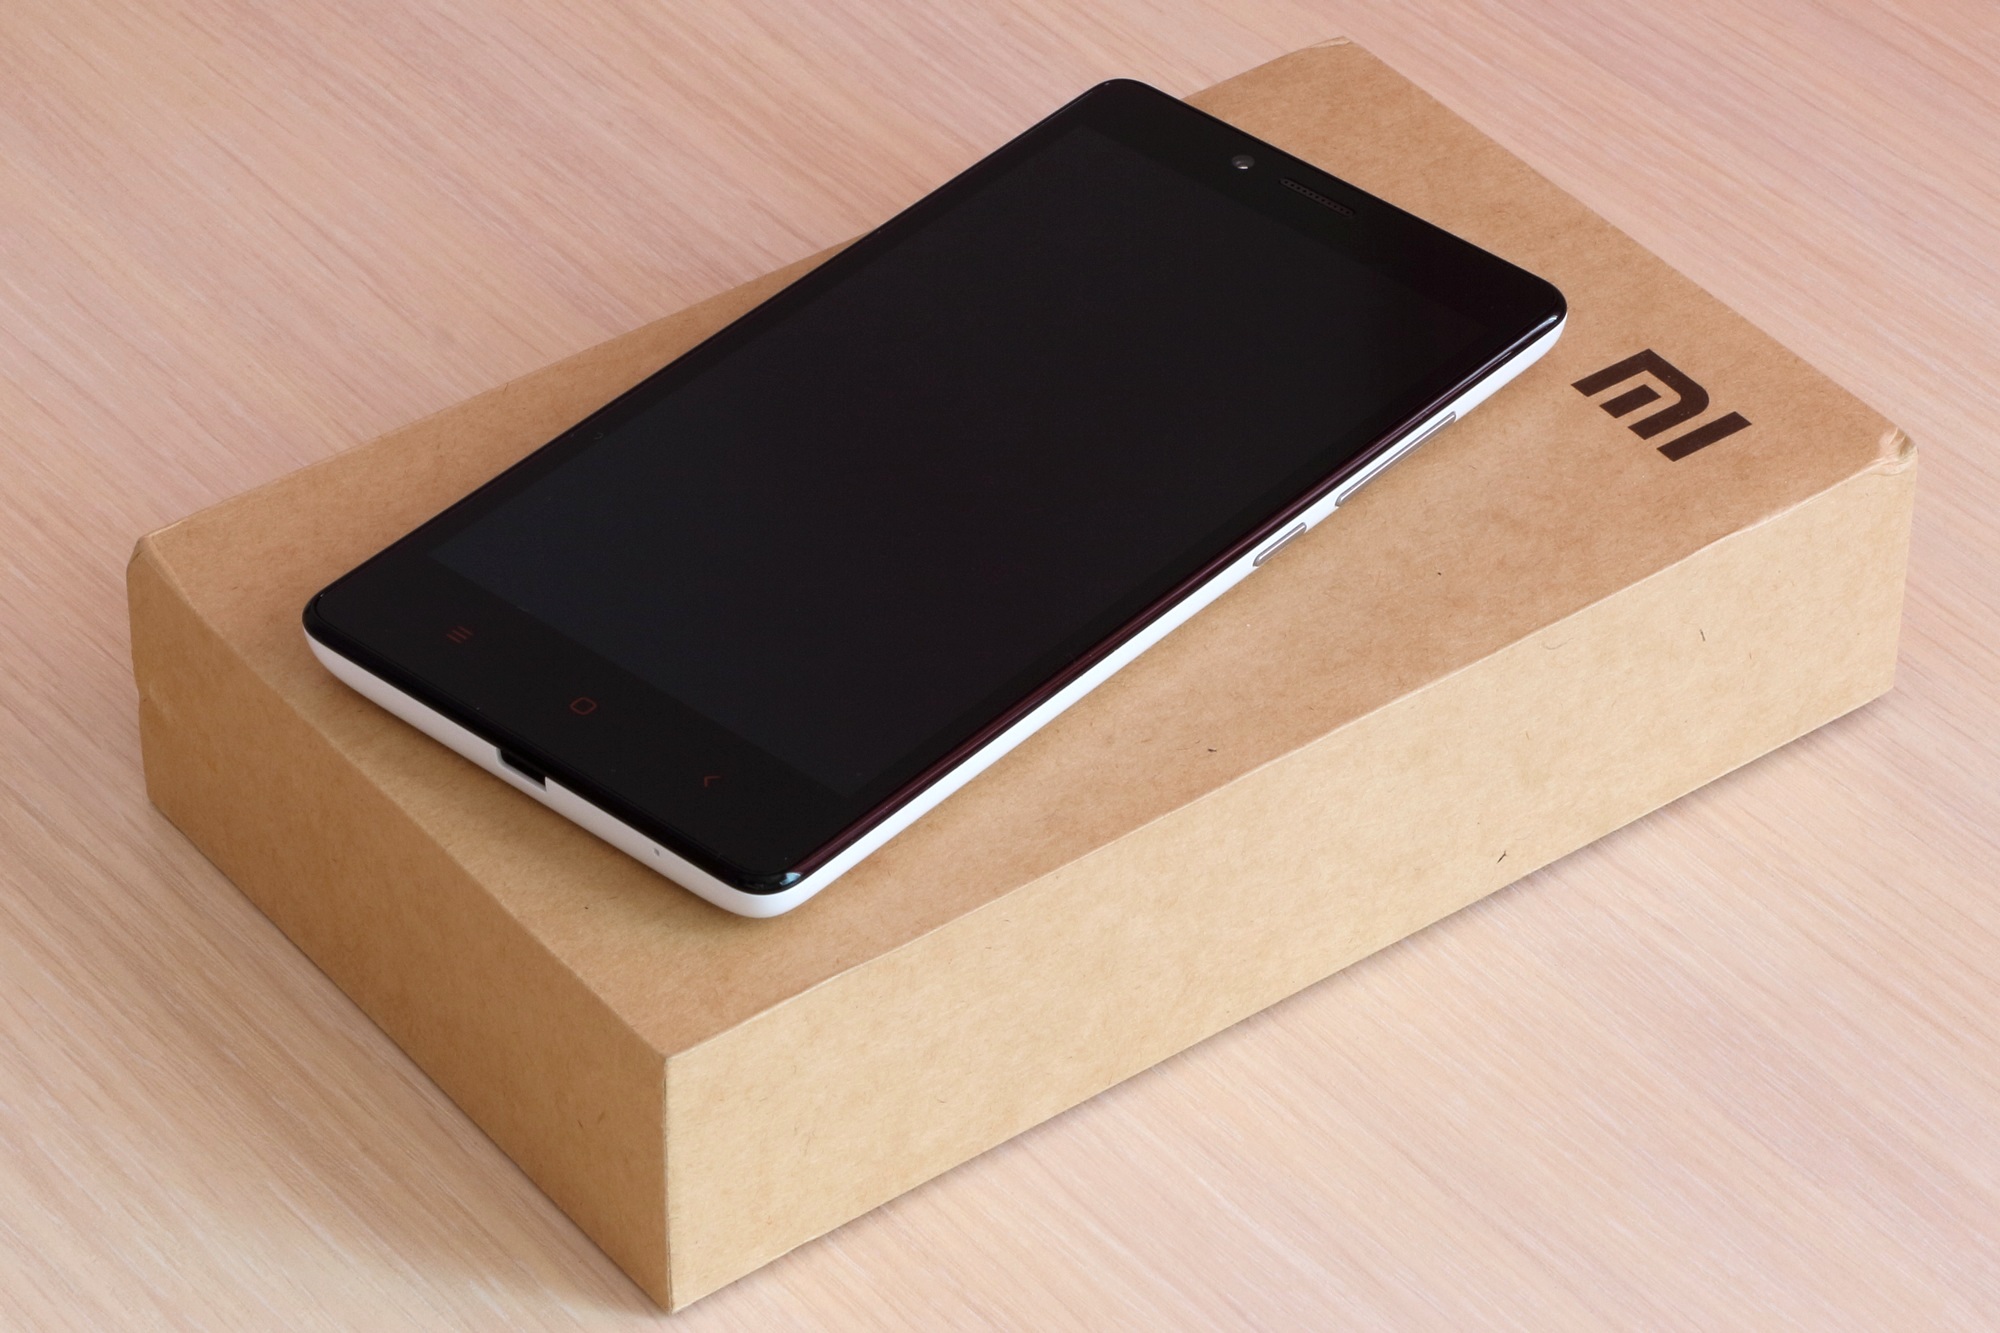 Xiaomi Redmi Note 10T